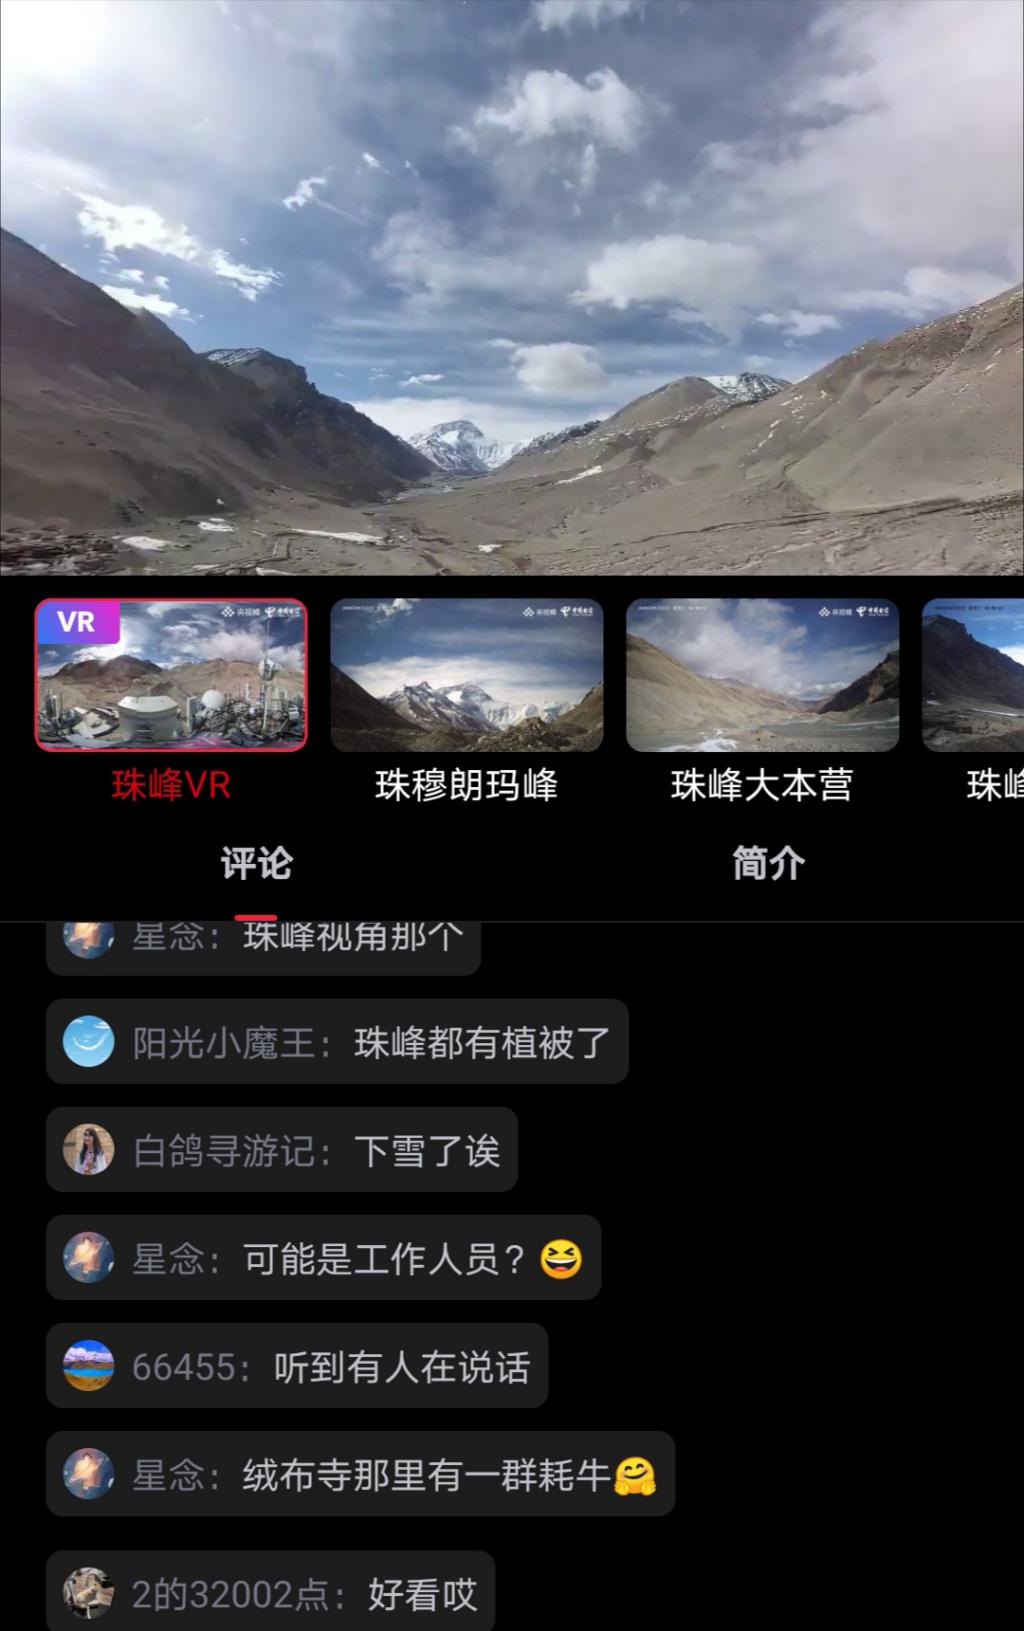 央视频5G慢直播 带您云登顶看珠峰